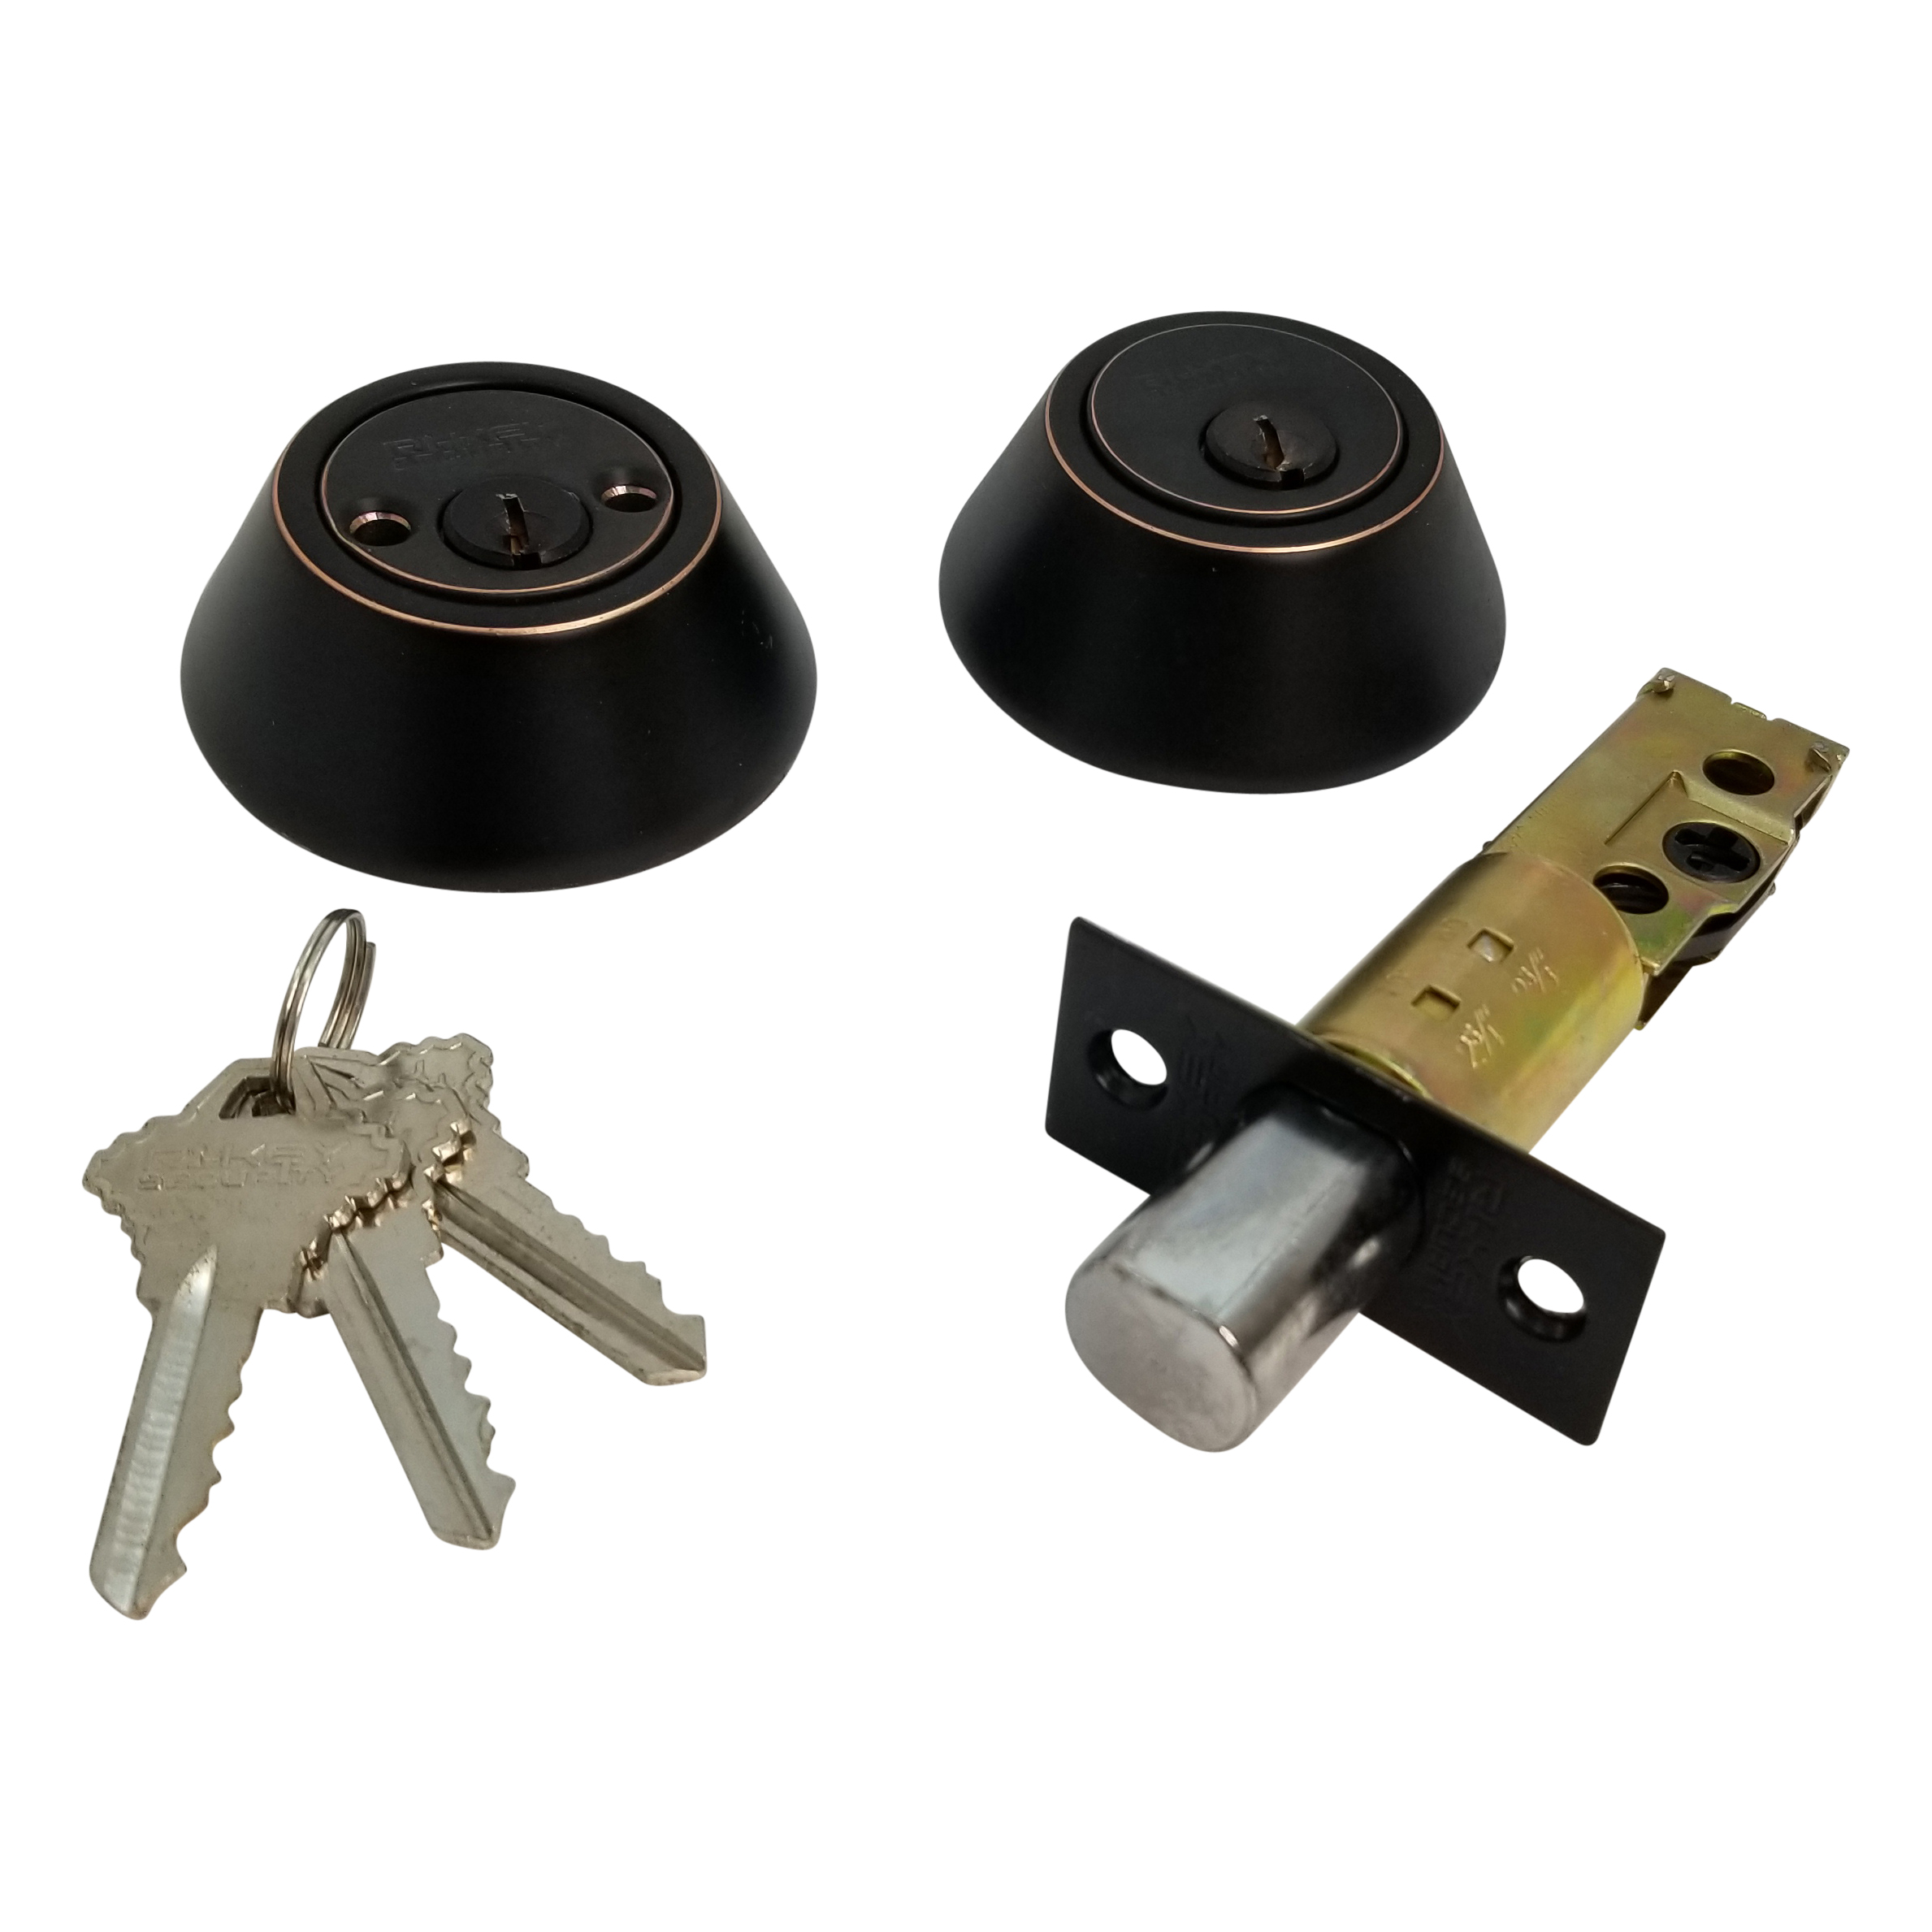 high security deadbolt locks